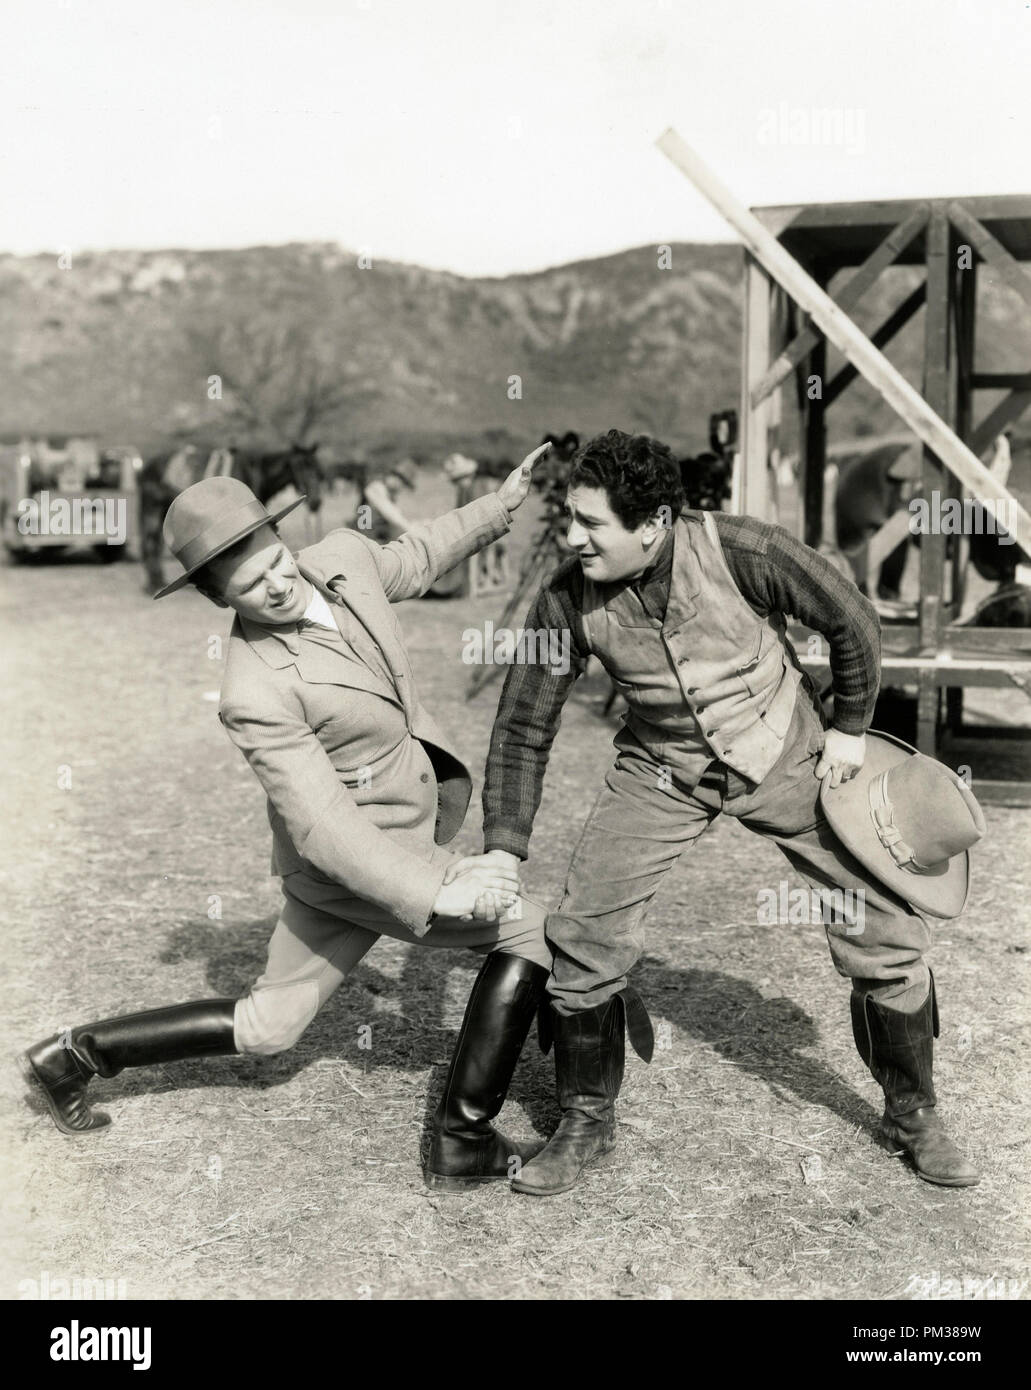 Stummfilm Szene immer noch. Zwei Männer in Stiefel und westliche Abnutzung festhalten, 1930. Datei Referenz Nr. 1183 010 THA Stockfoto